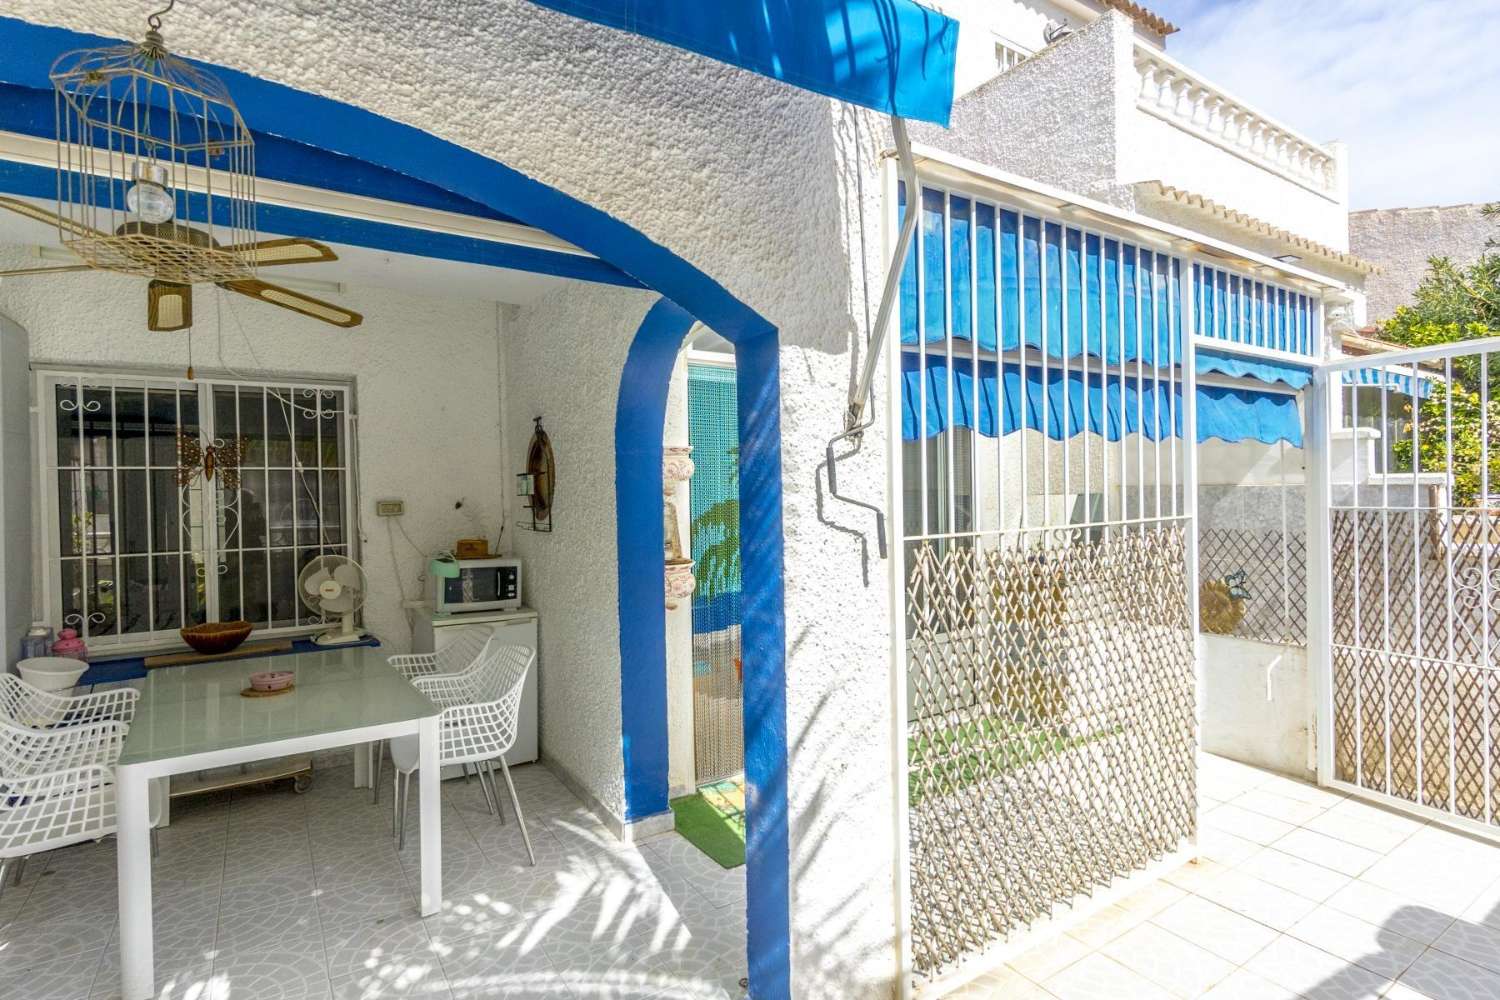 TORREVIEJA El Limonar, Encantadora casa adosada de 2 dormitorios, reformada, con piscina comunitaria